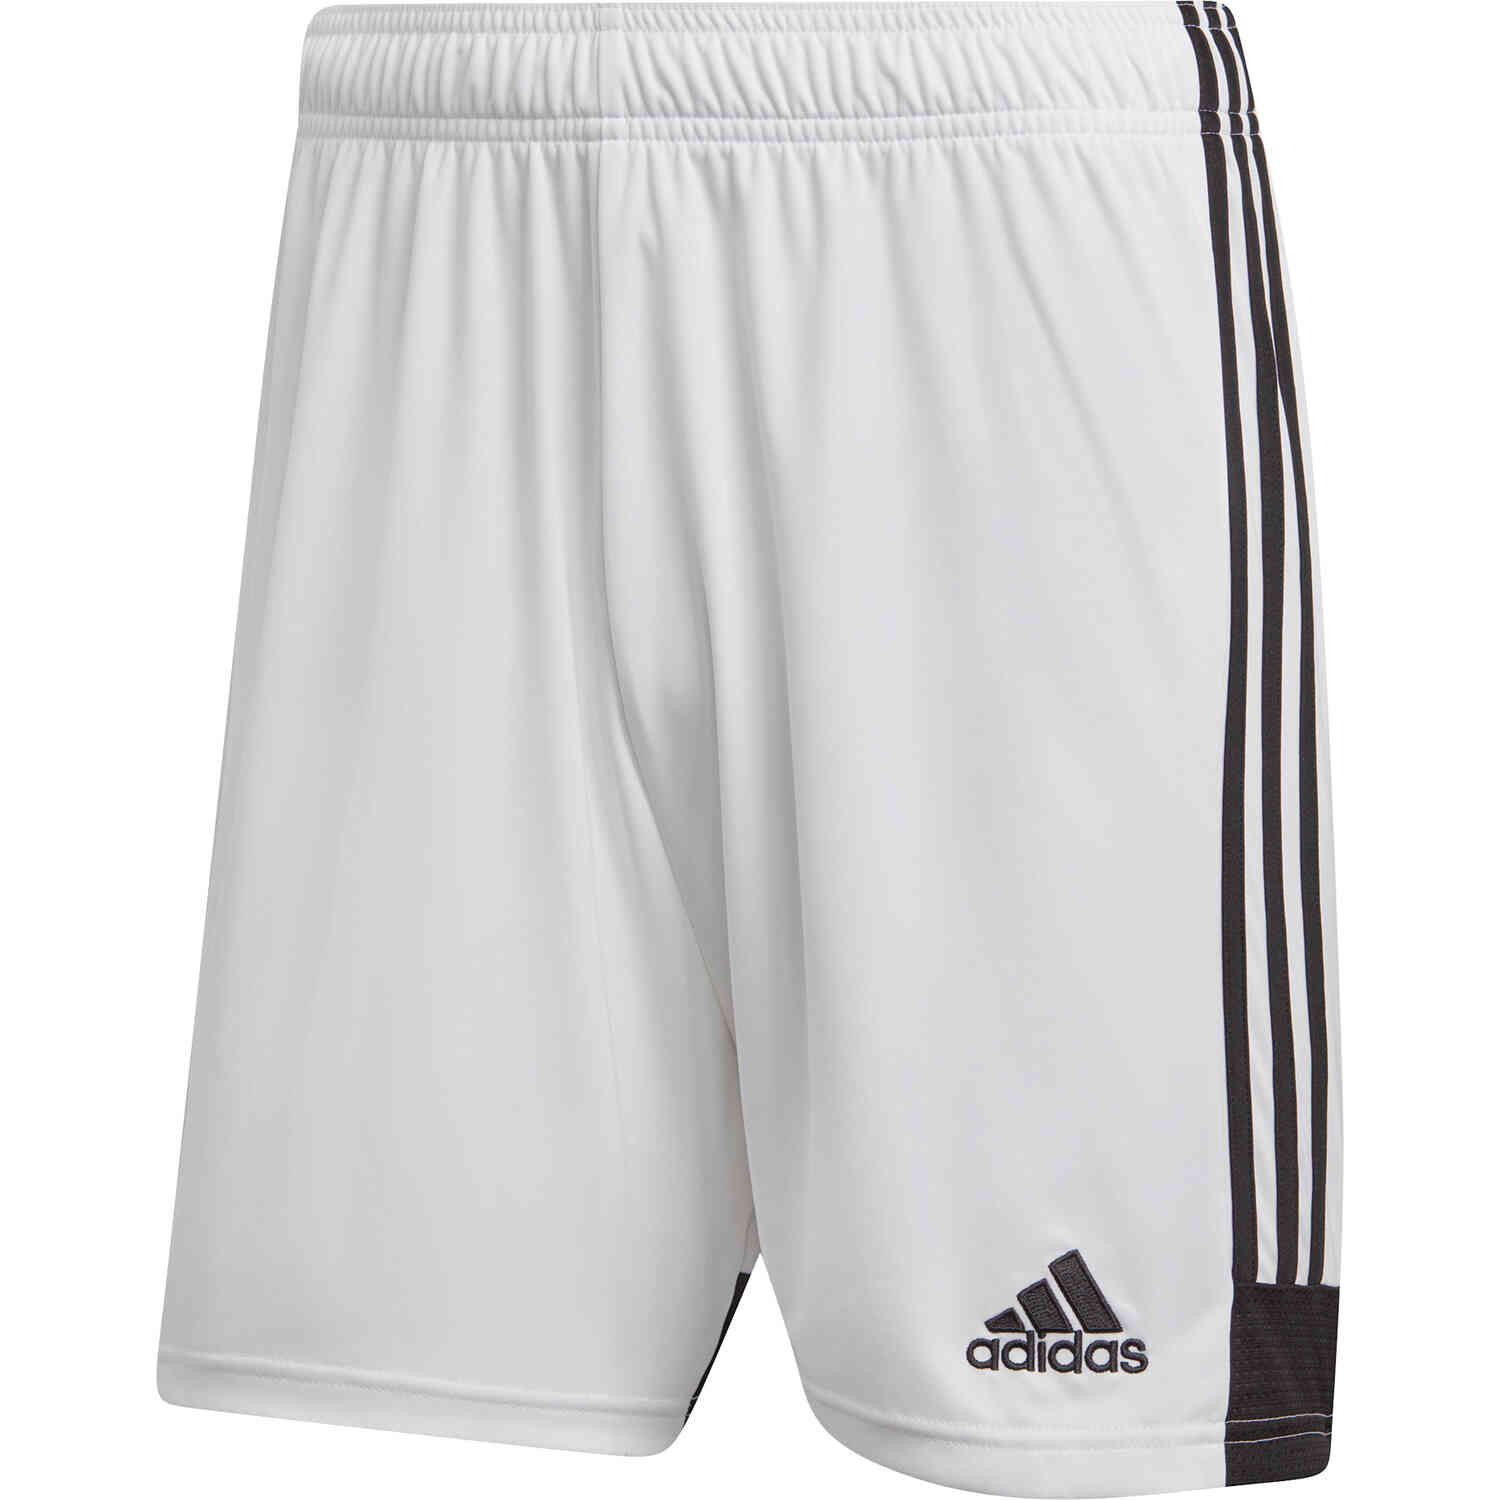 Kids adidas Tastigo 19 Shorts - White/Black - SoccerPro